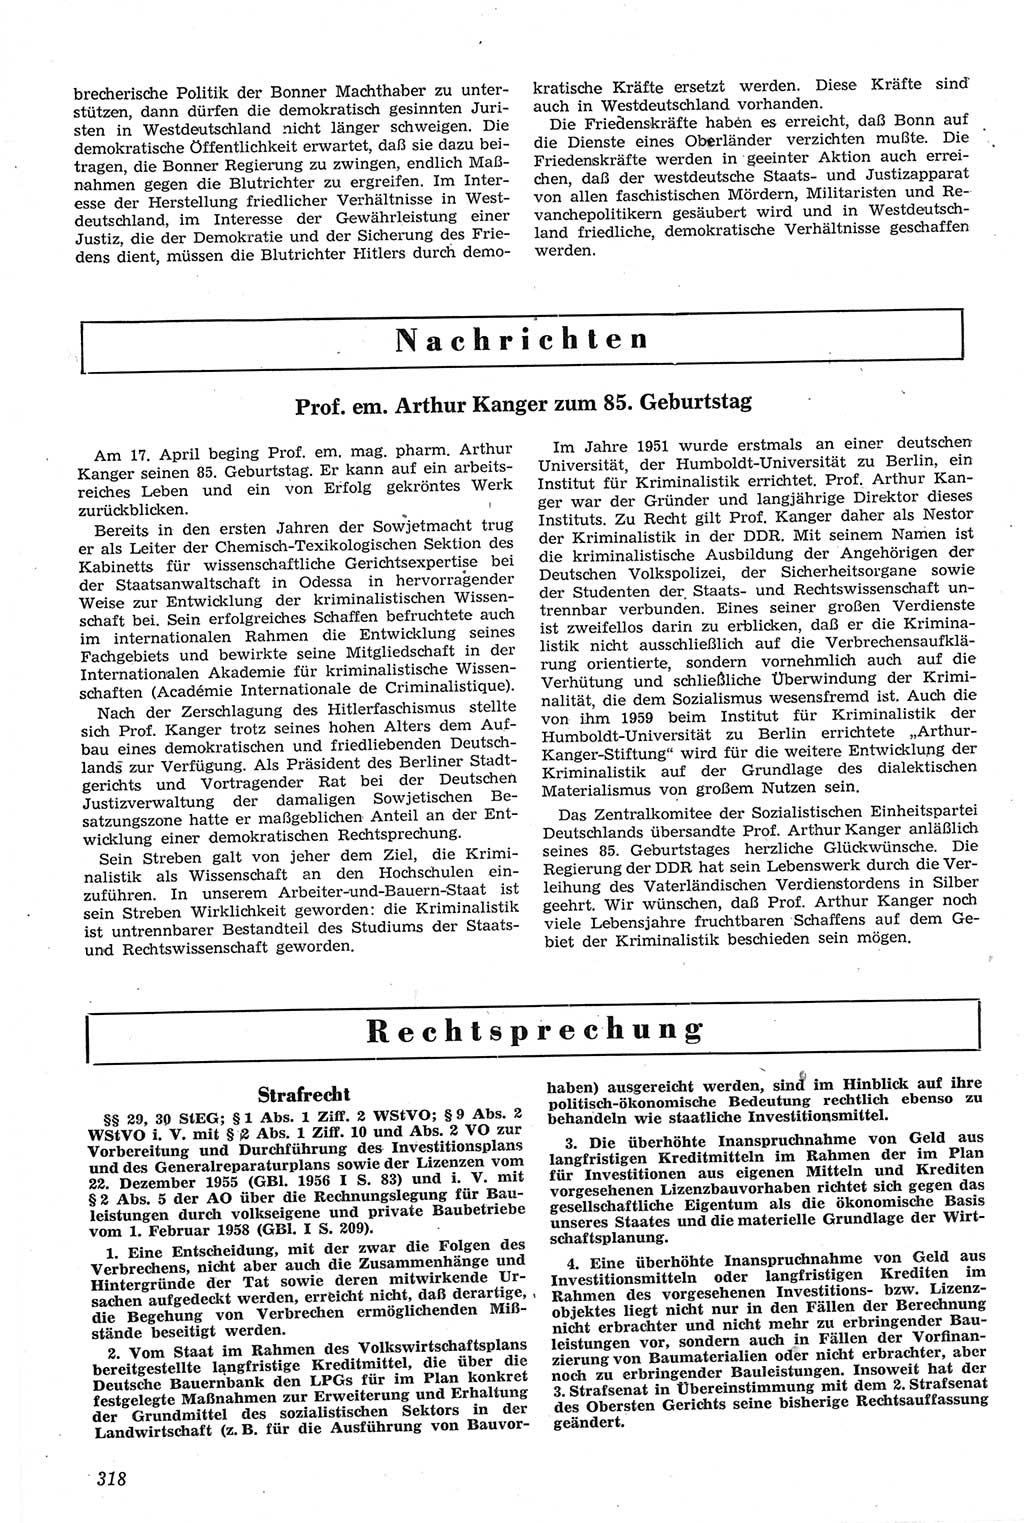 Neue Justiz (NJ), Zeitschrift für Recht und Rechtswissenschaft [Deutsche Demokratische Republik (DDR)], 14. Jahrgang 1960, Seite 318 (NJ DDR 1960, S. 318)